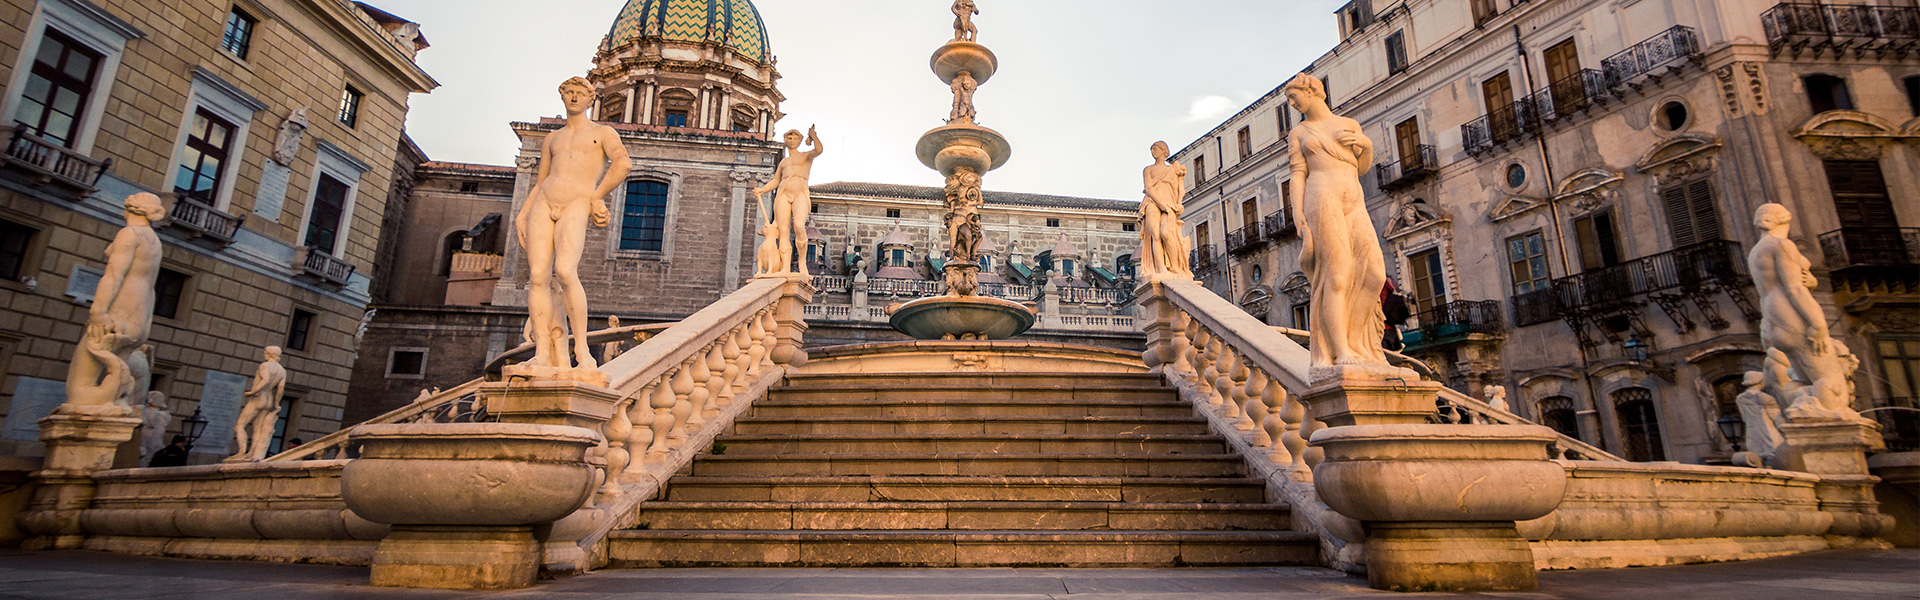 Idee per il Ponte dei Santi: le 10 cose da vedere a Palermo (nella foto la Fontana Pretoria)